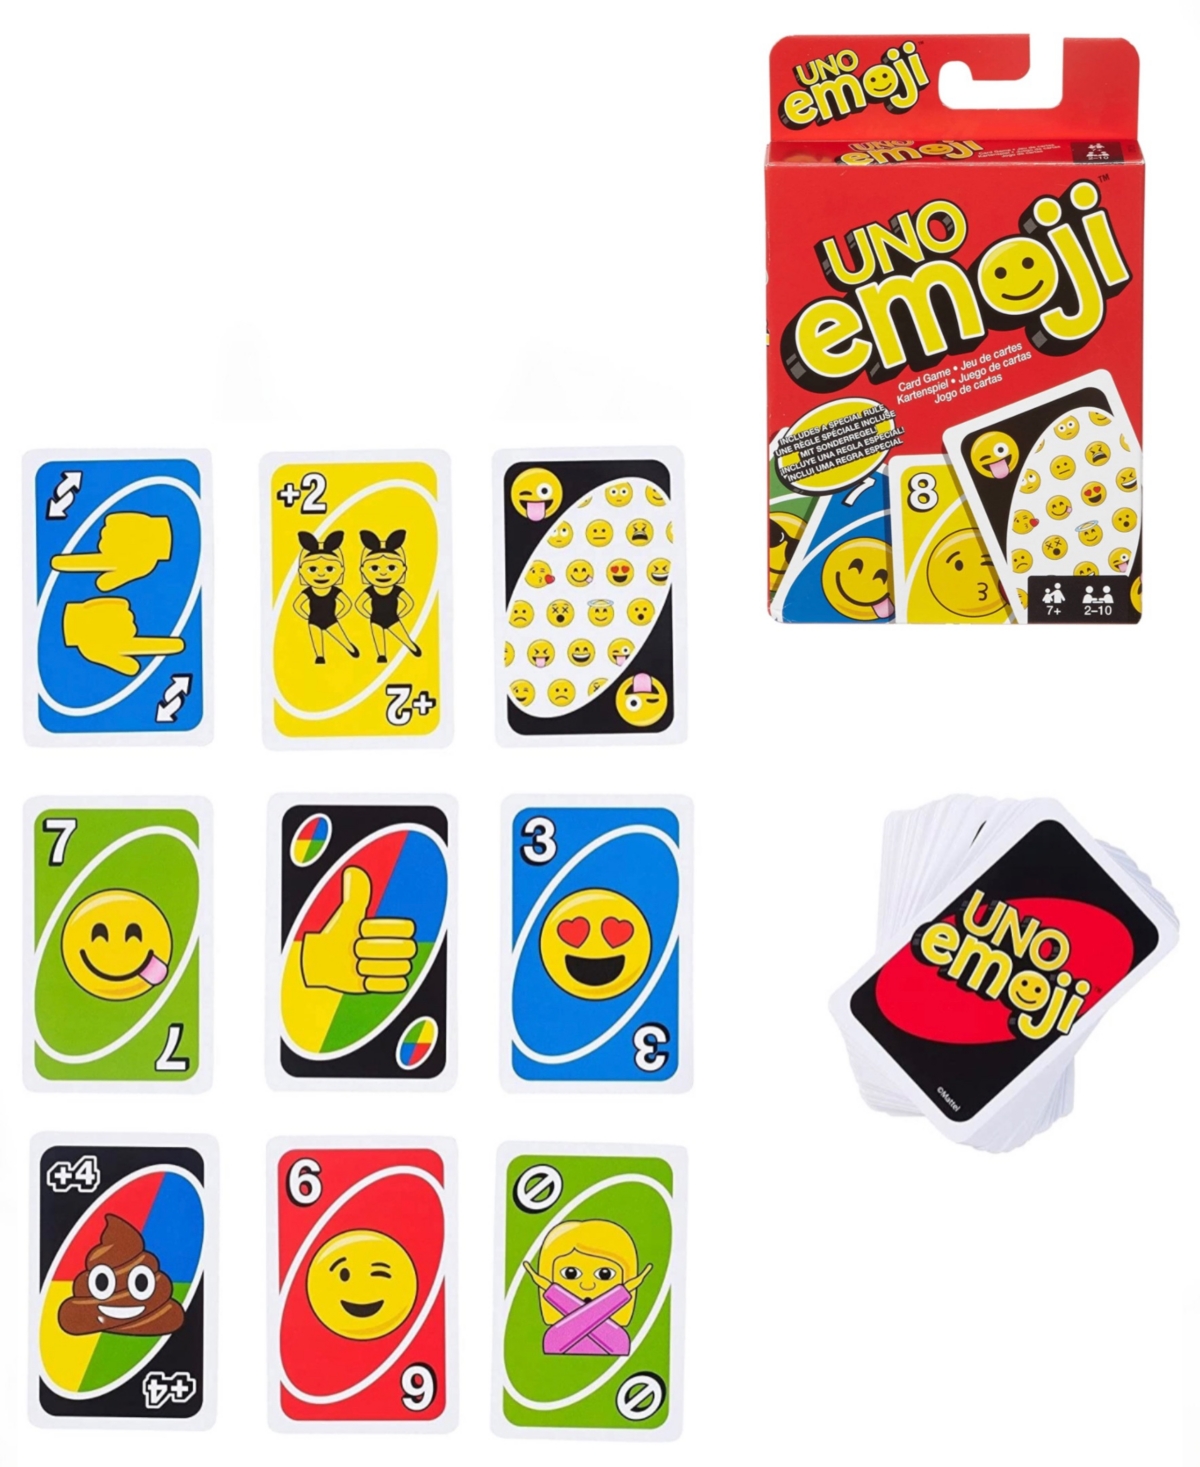 Mattel Kids' - Emoji Uno Card Game In Multi Colored